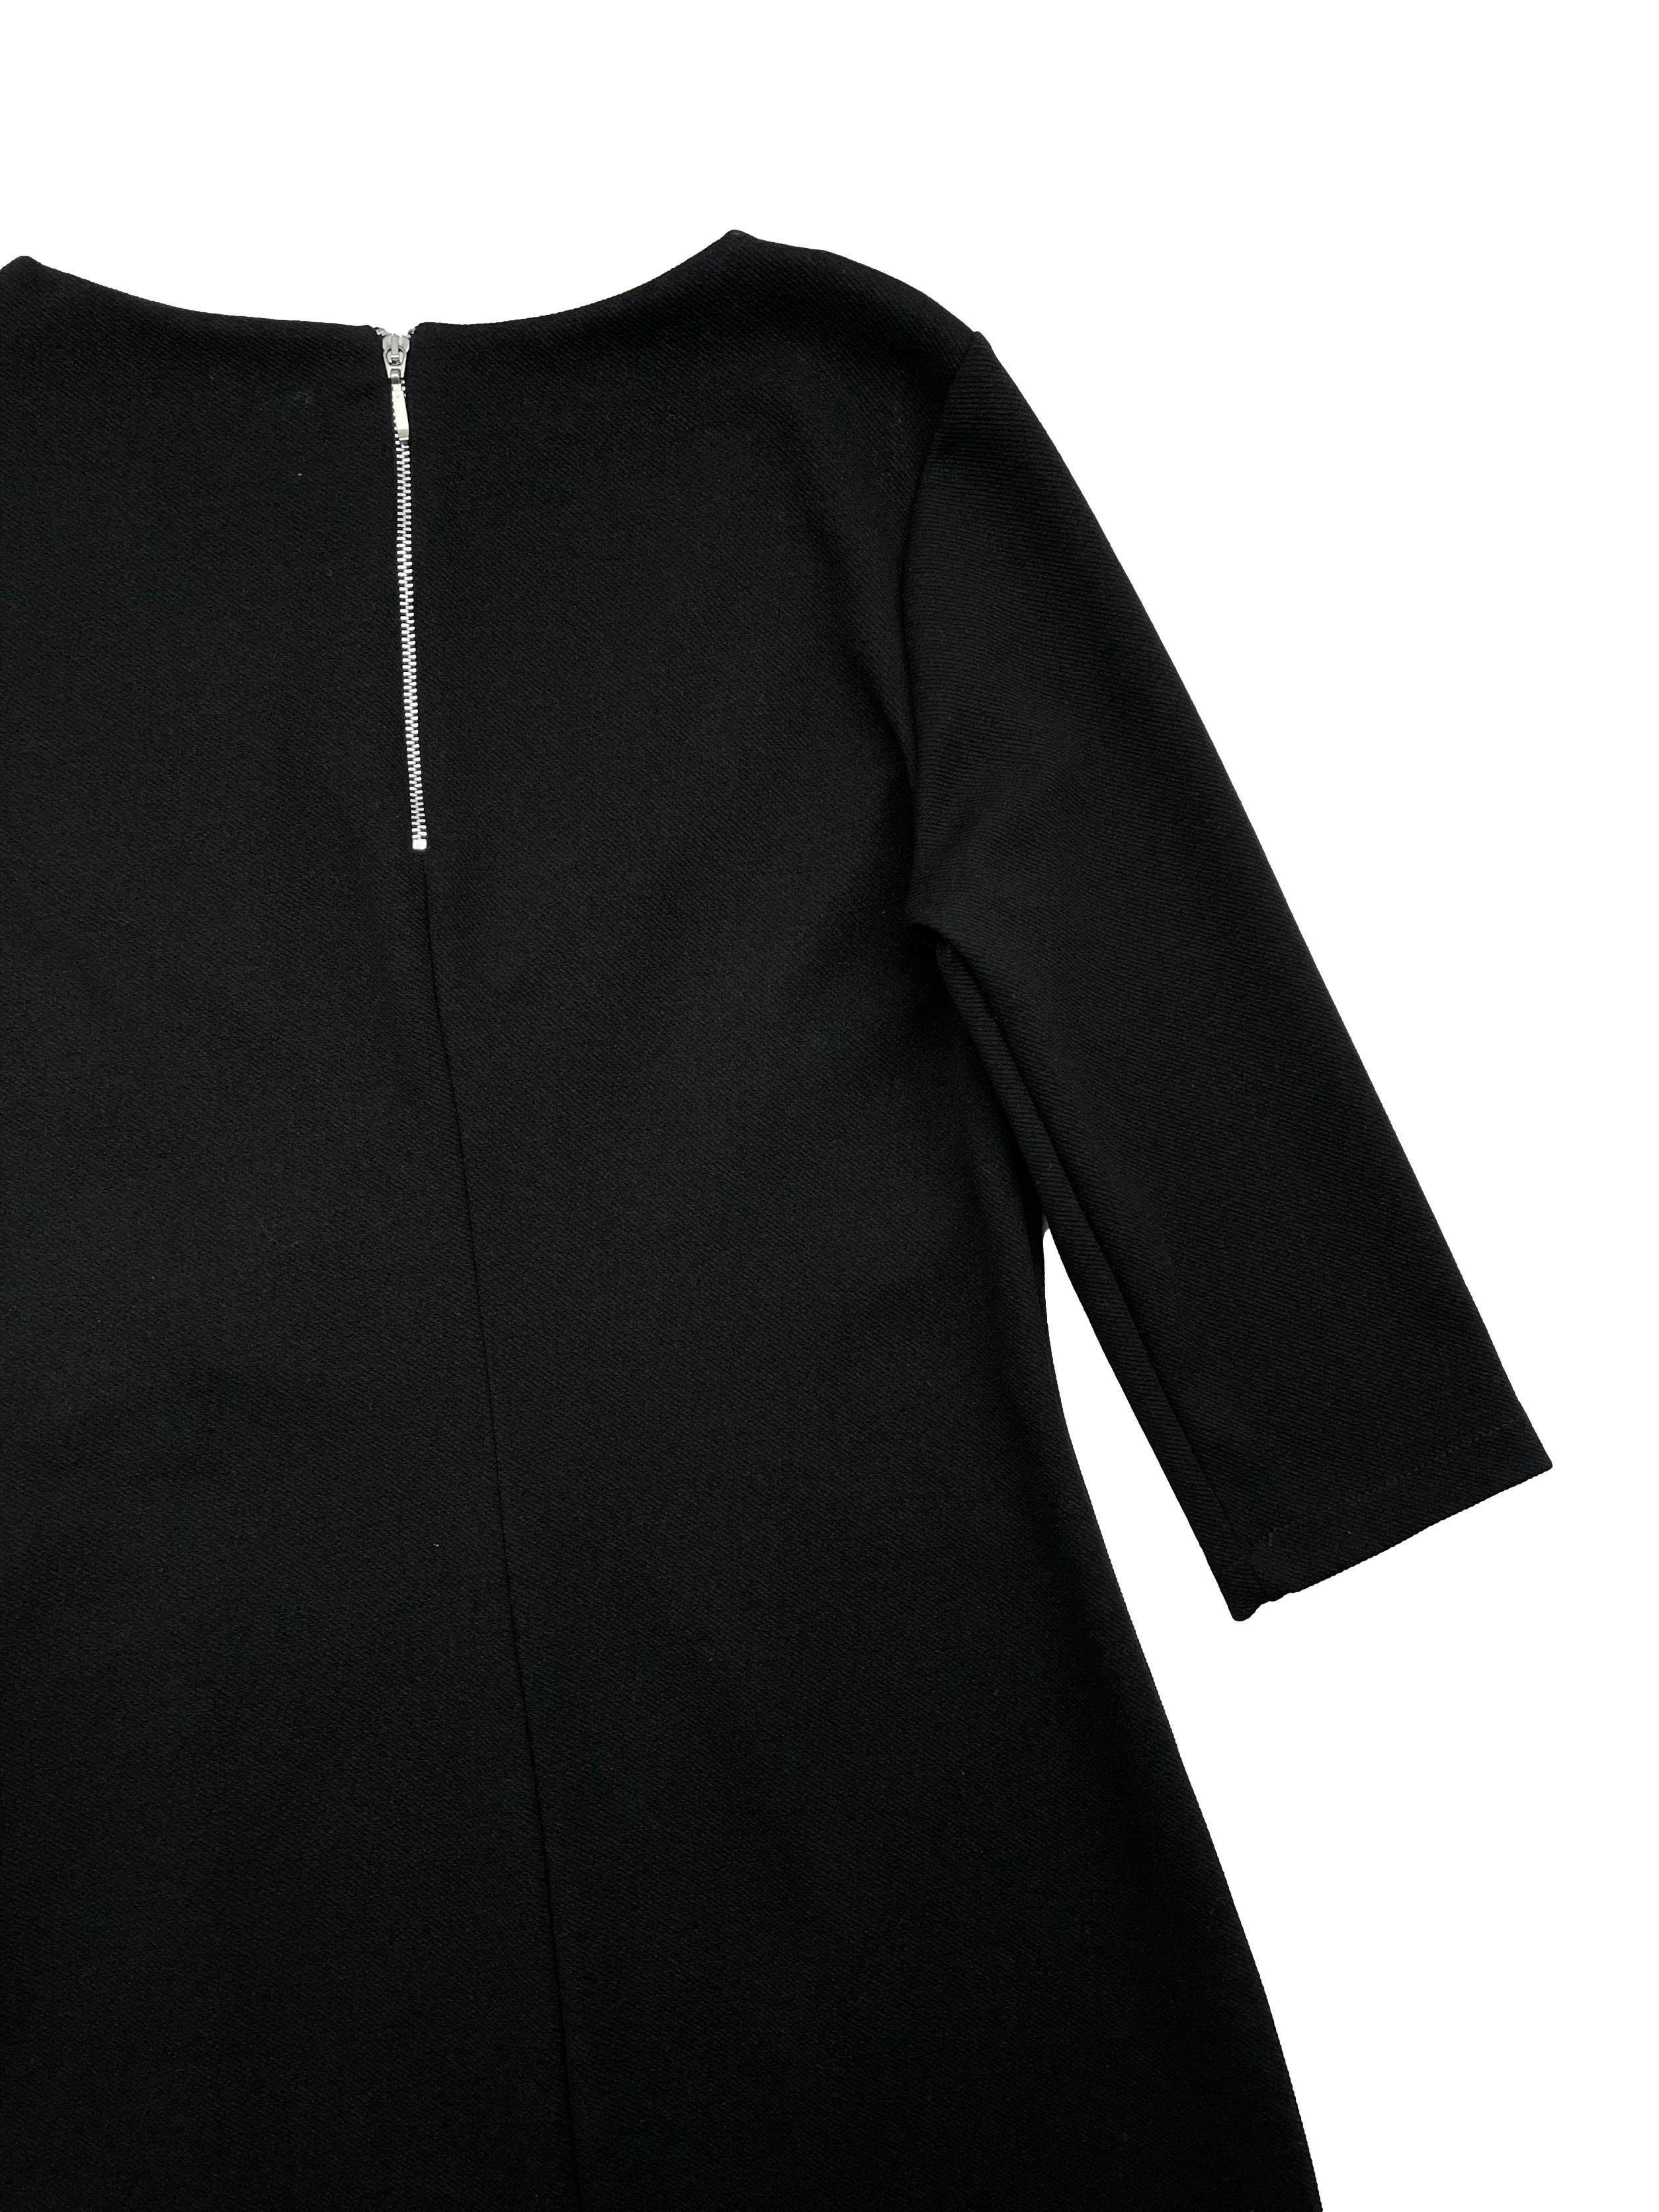 Vestido negro de tela stretch, cruce frontal con botones plateados, mangas 3/4, cierre metálico posterior. Busto 88cm sin estirar, Largo 80cm.